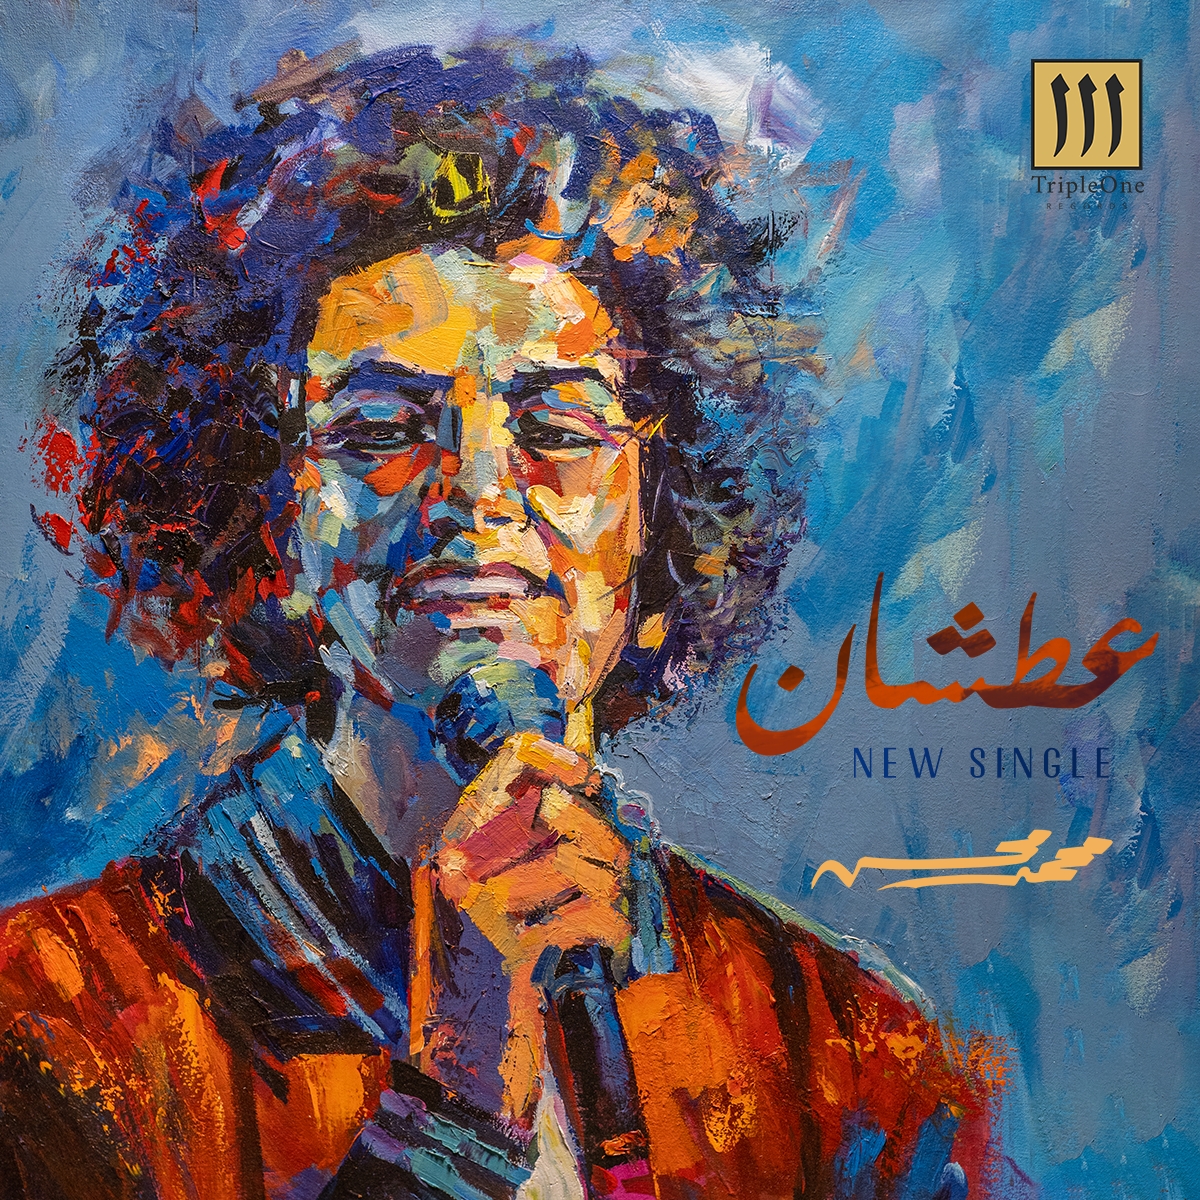 محمد محسن يطرح أحدث أغانيه "عطشان" من إنتاج شركة "TripleOne Records"